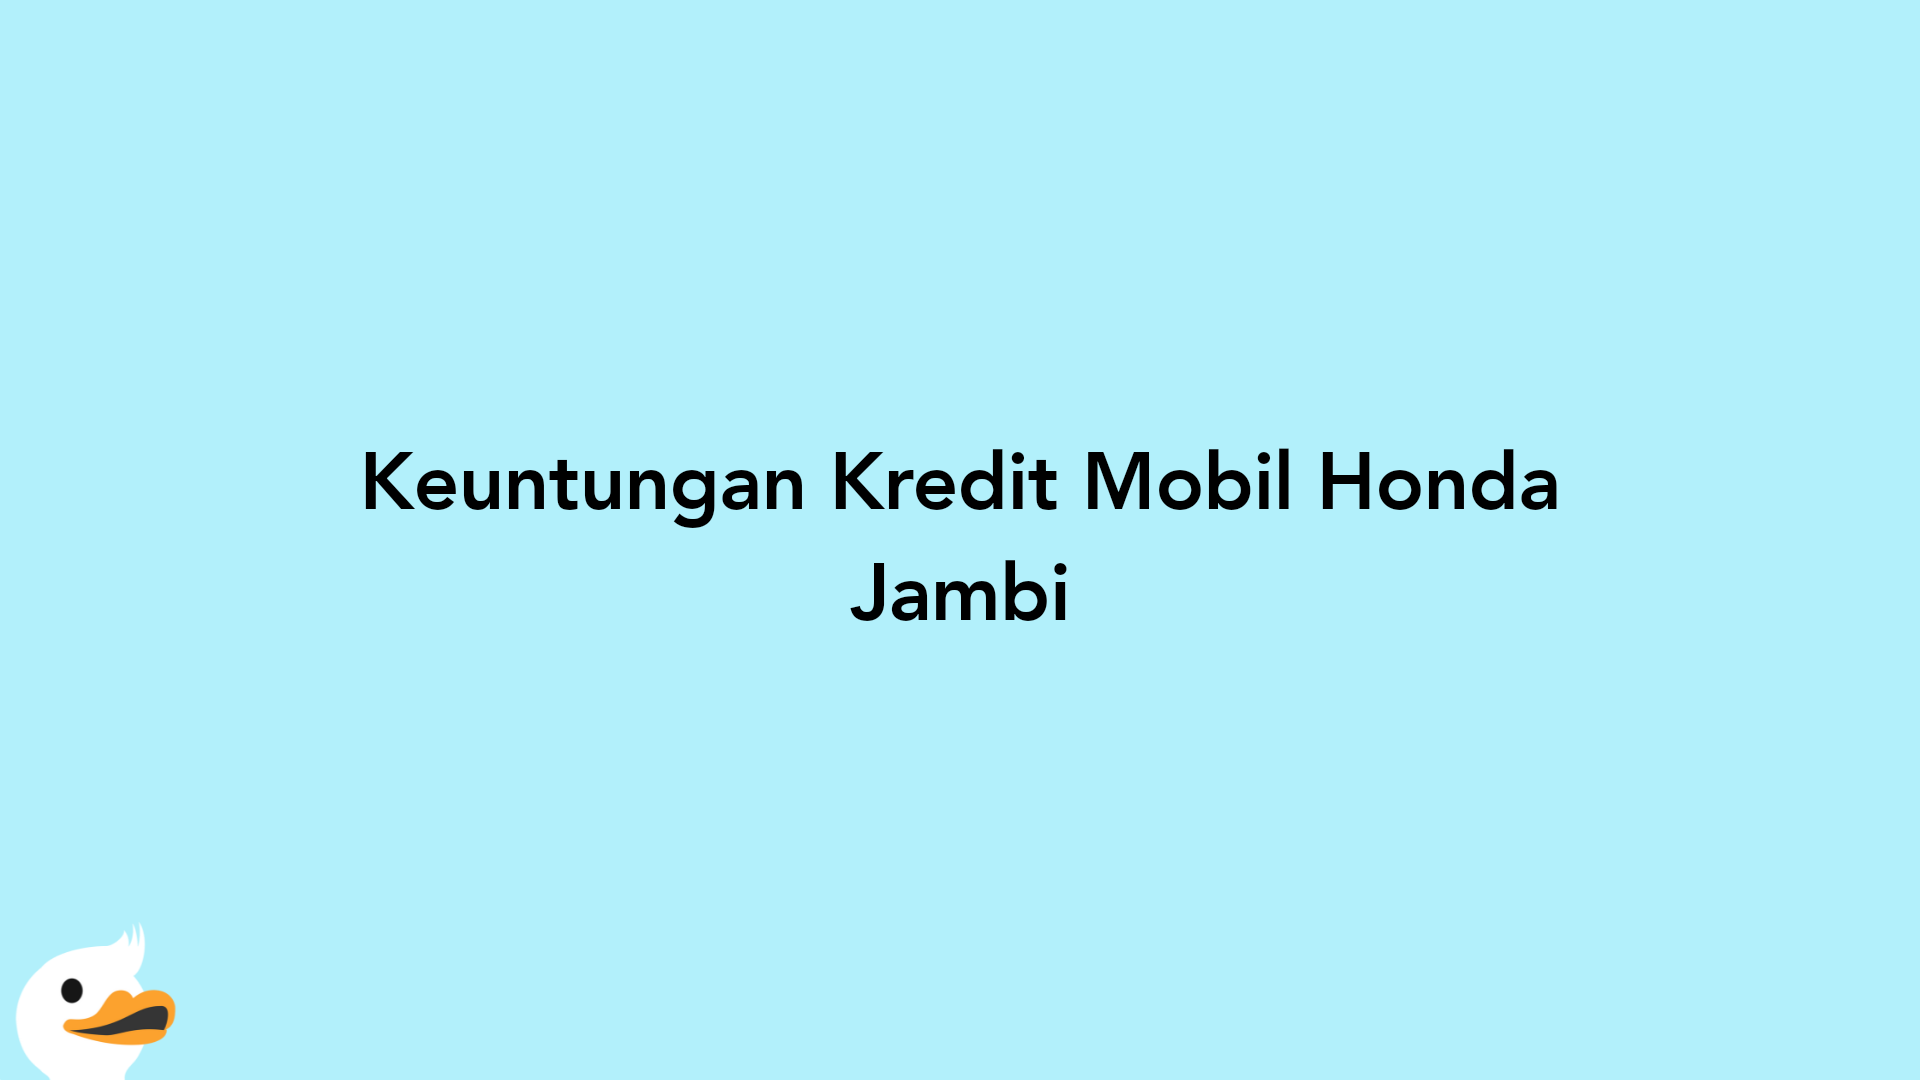 Keuntungan Kredit Mobil Honda Jambi